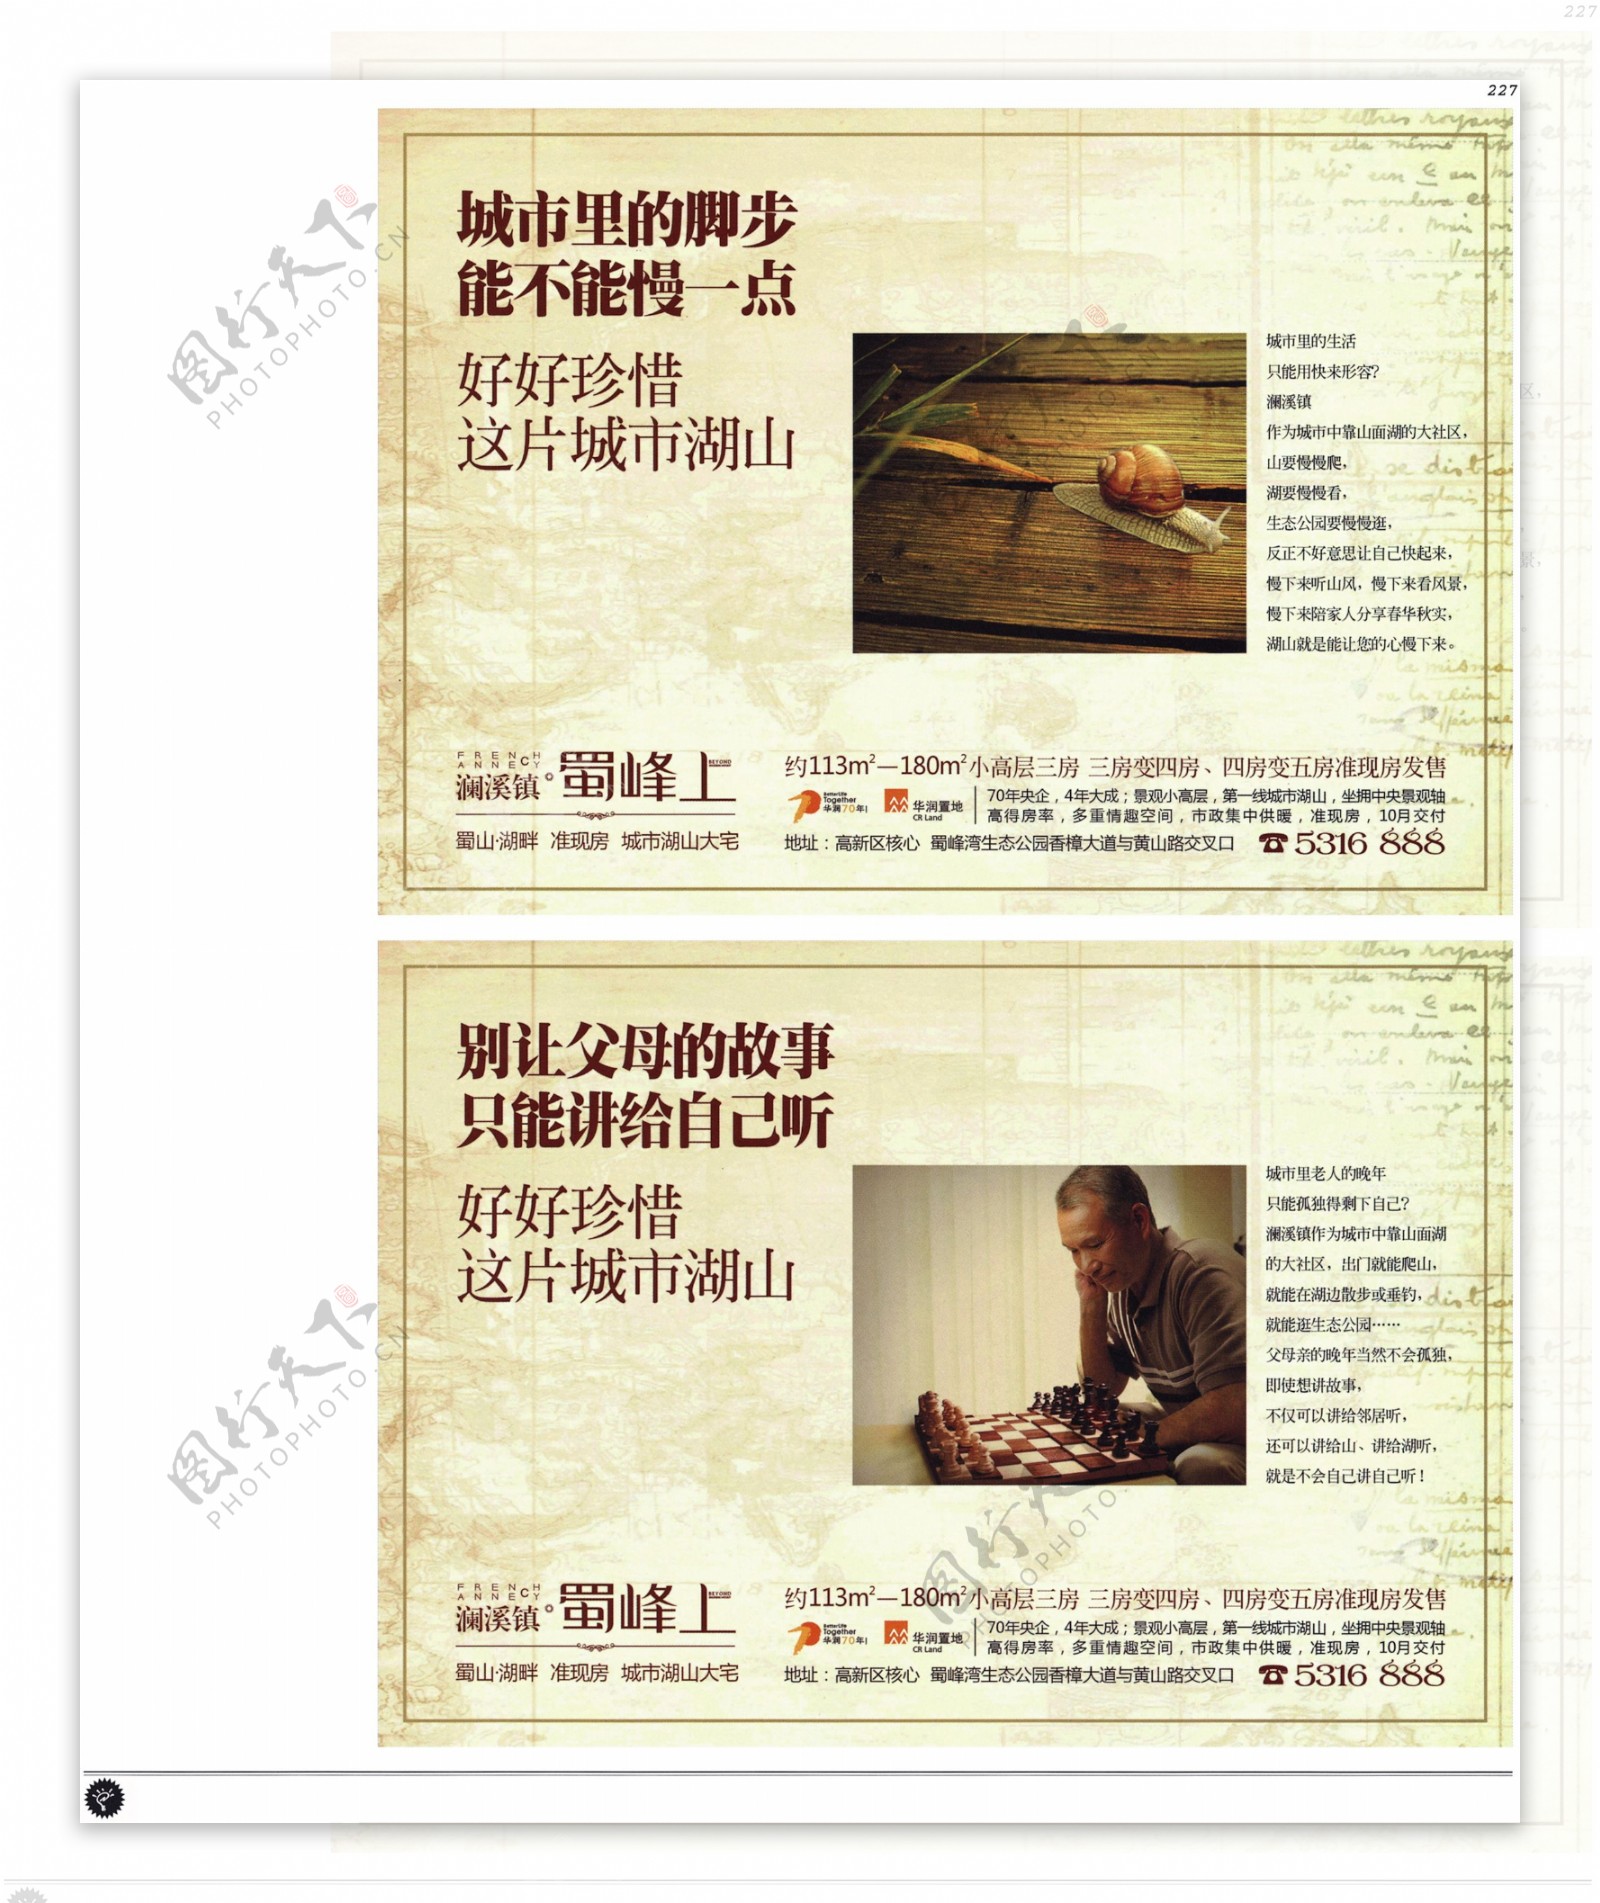 中国房地产广告年鉴第一册创意设计0216